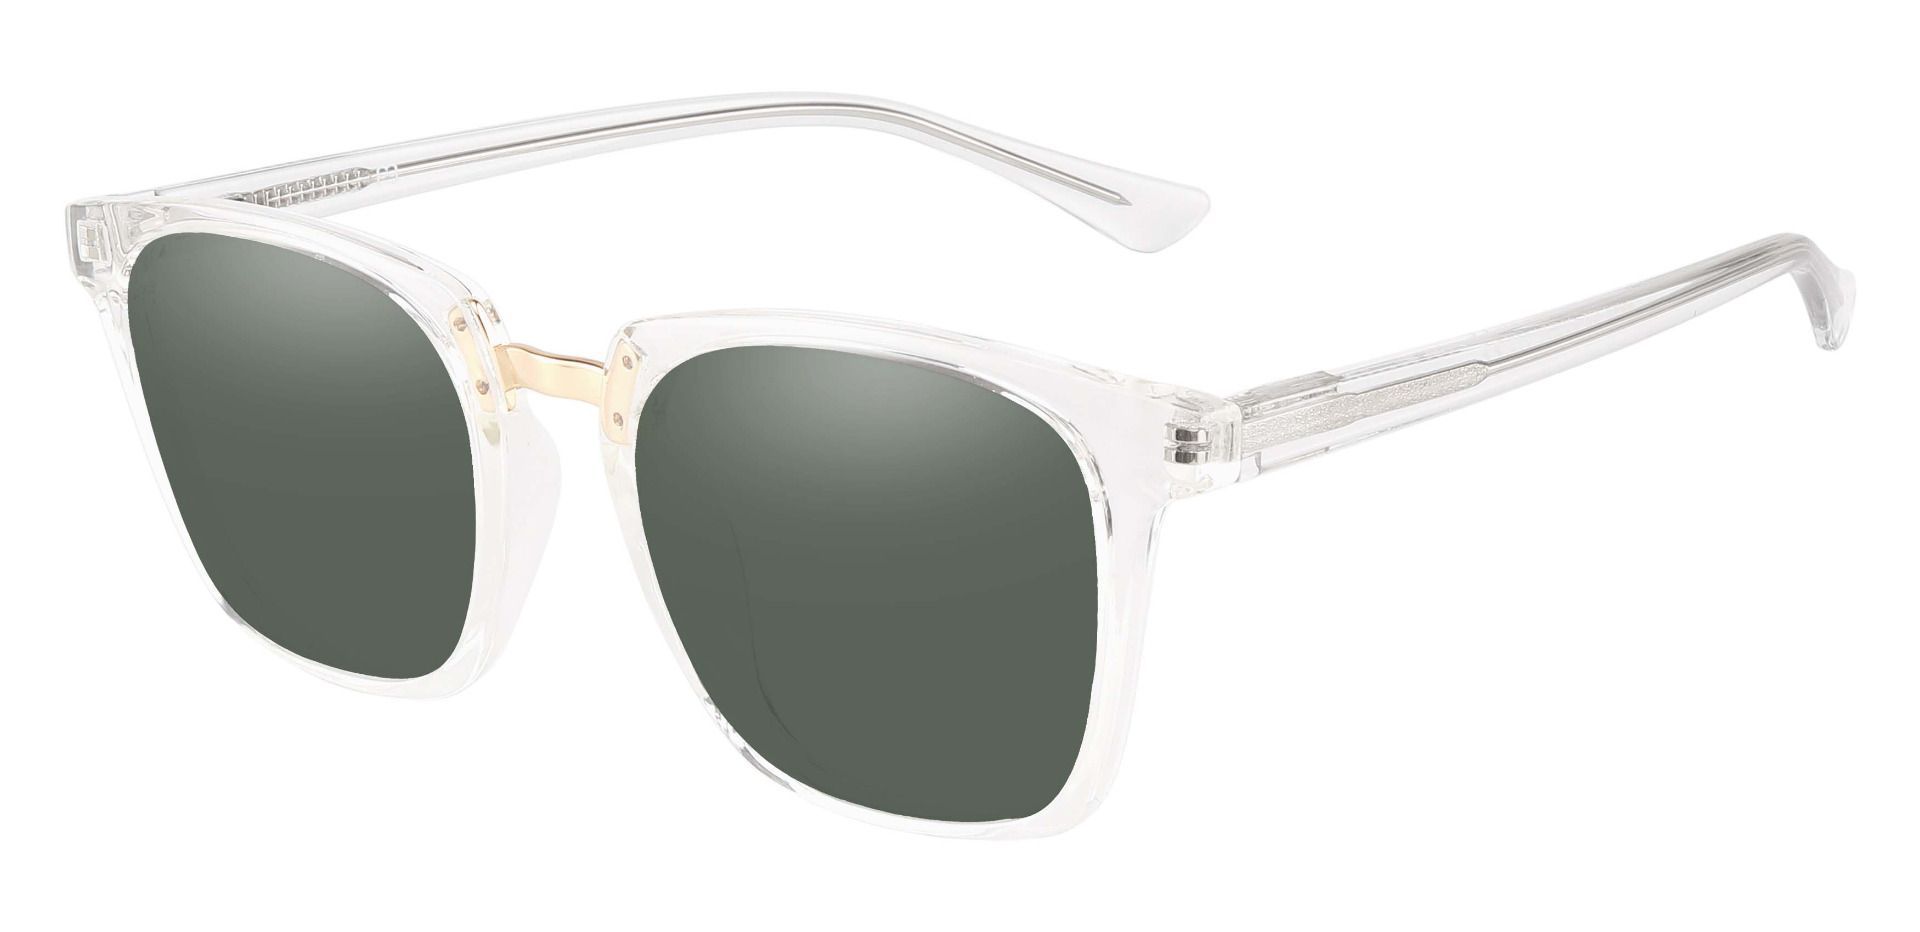 Delta Square Prescription Sunglasses - Clear Frame With Green Lenses